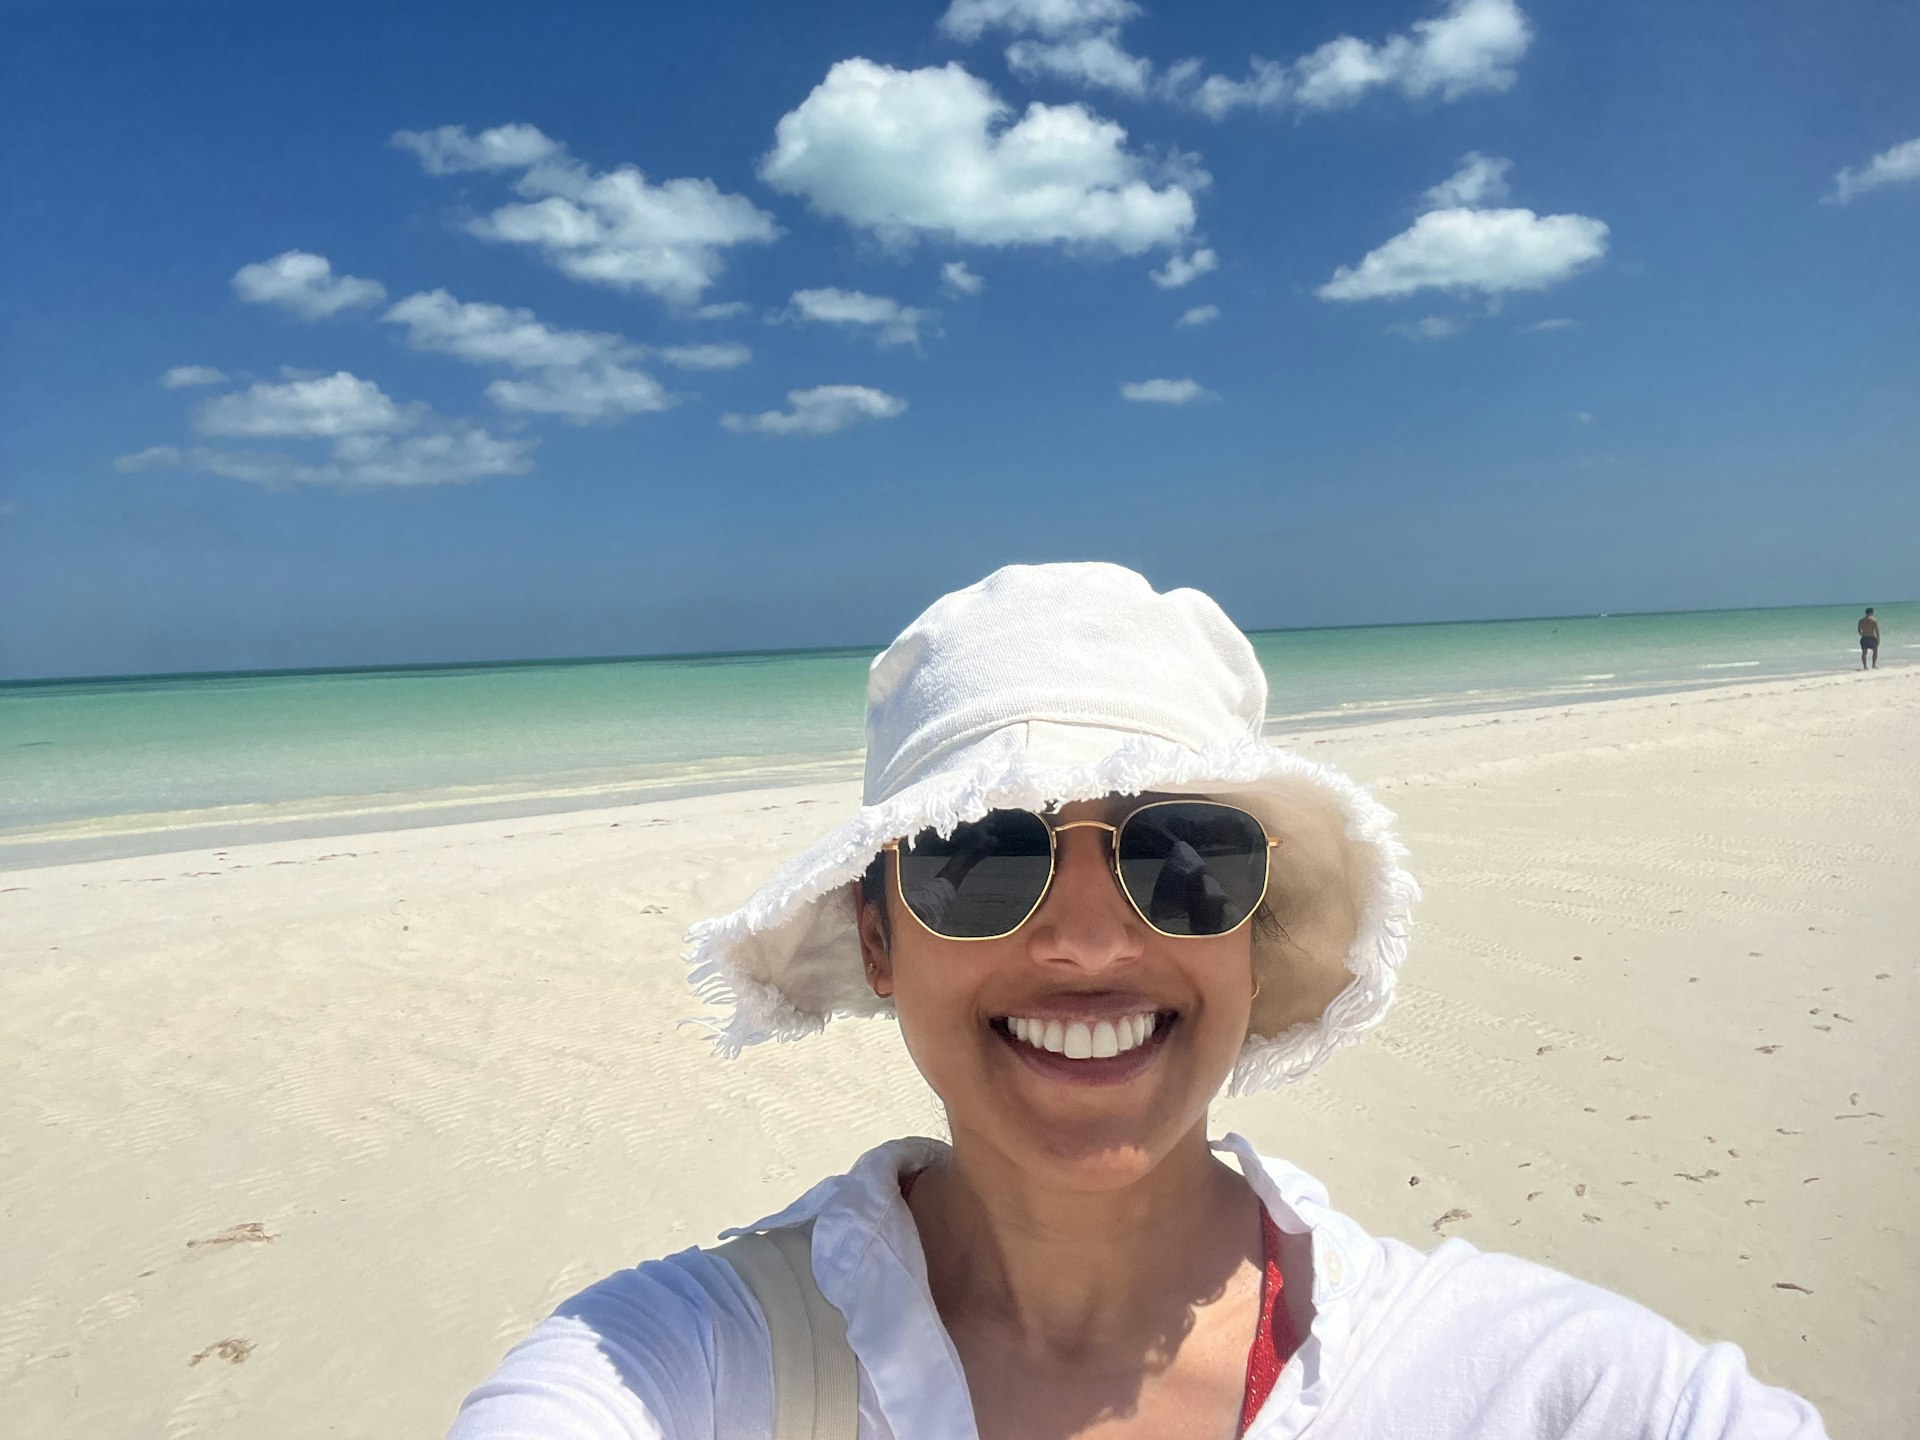 The author in a sun hat on a sunny beach